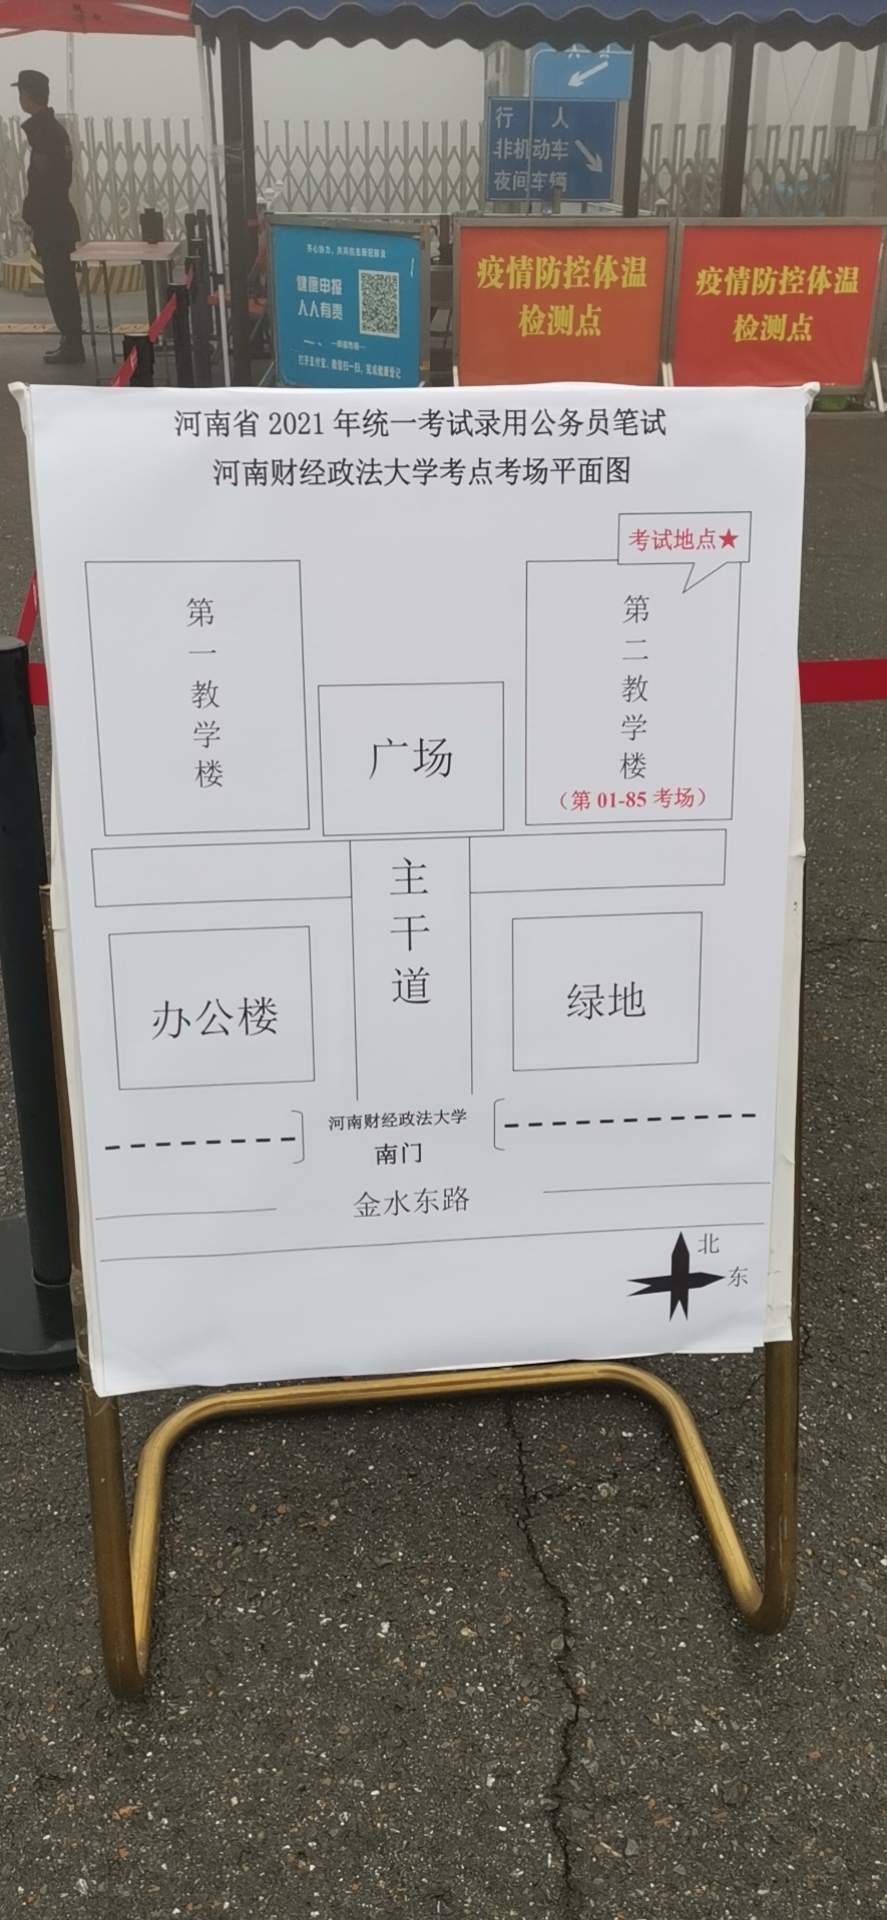 江西警察学院地图图片